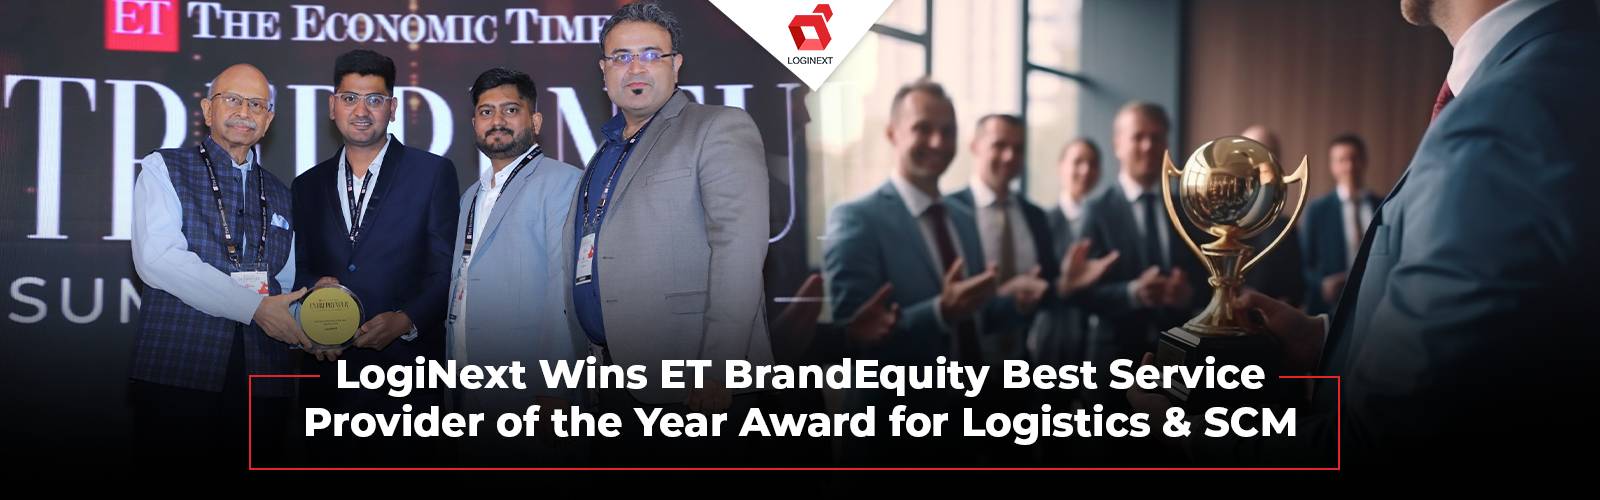 LogiNext লজিস্টিক ও SCM পরিষেবার জন্য ET BrandEquity পুরস্কার জিতেছে